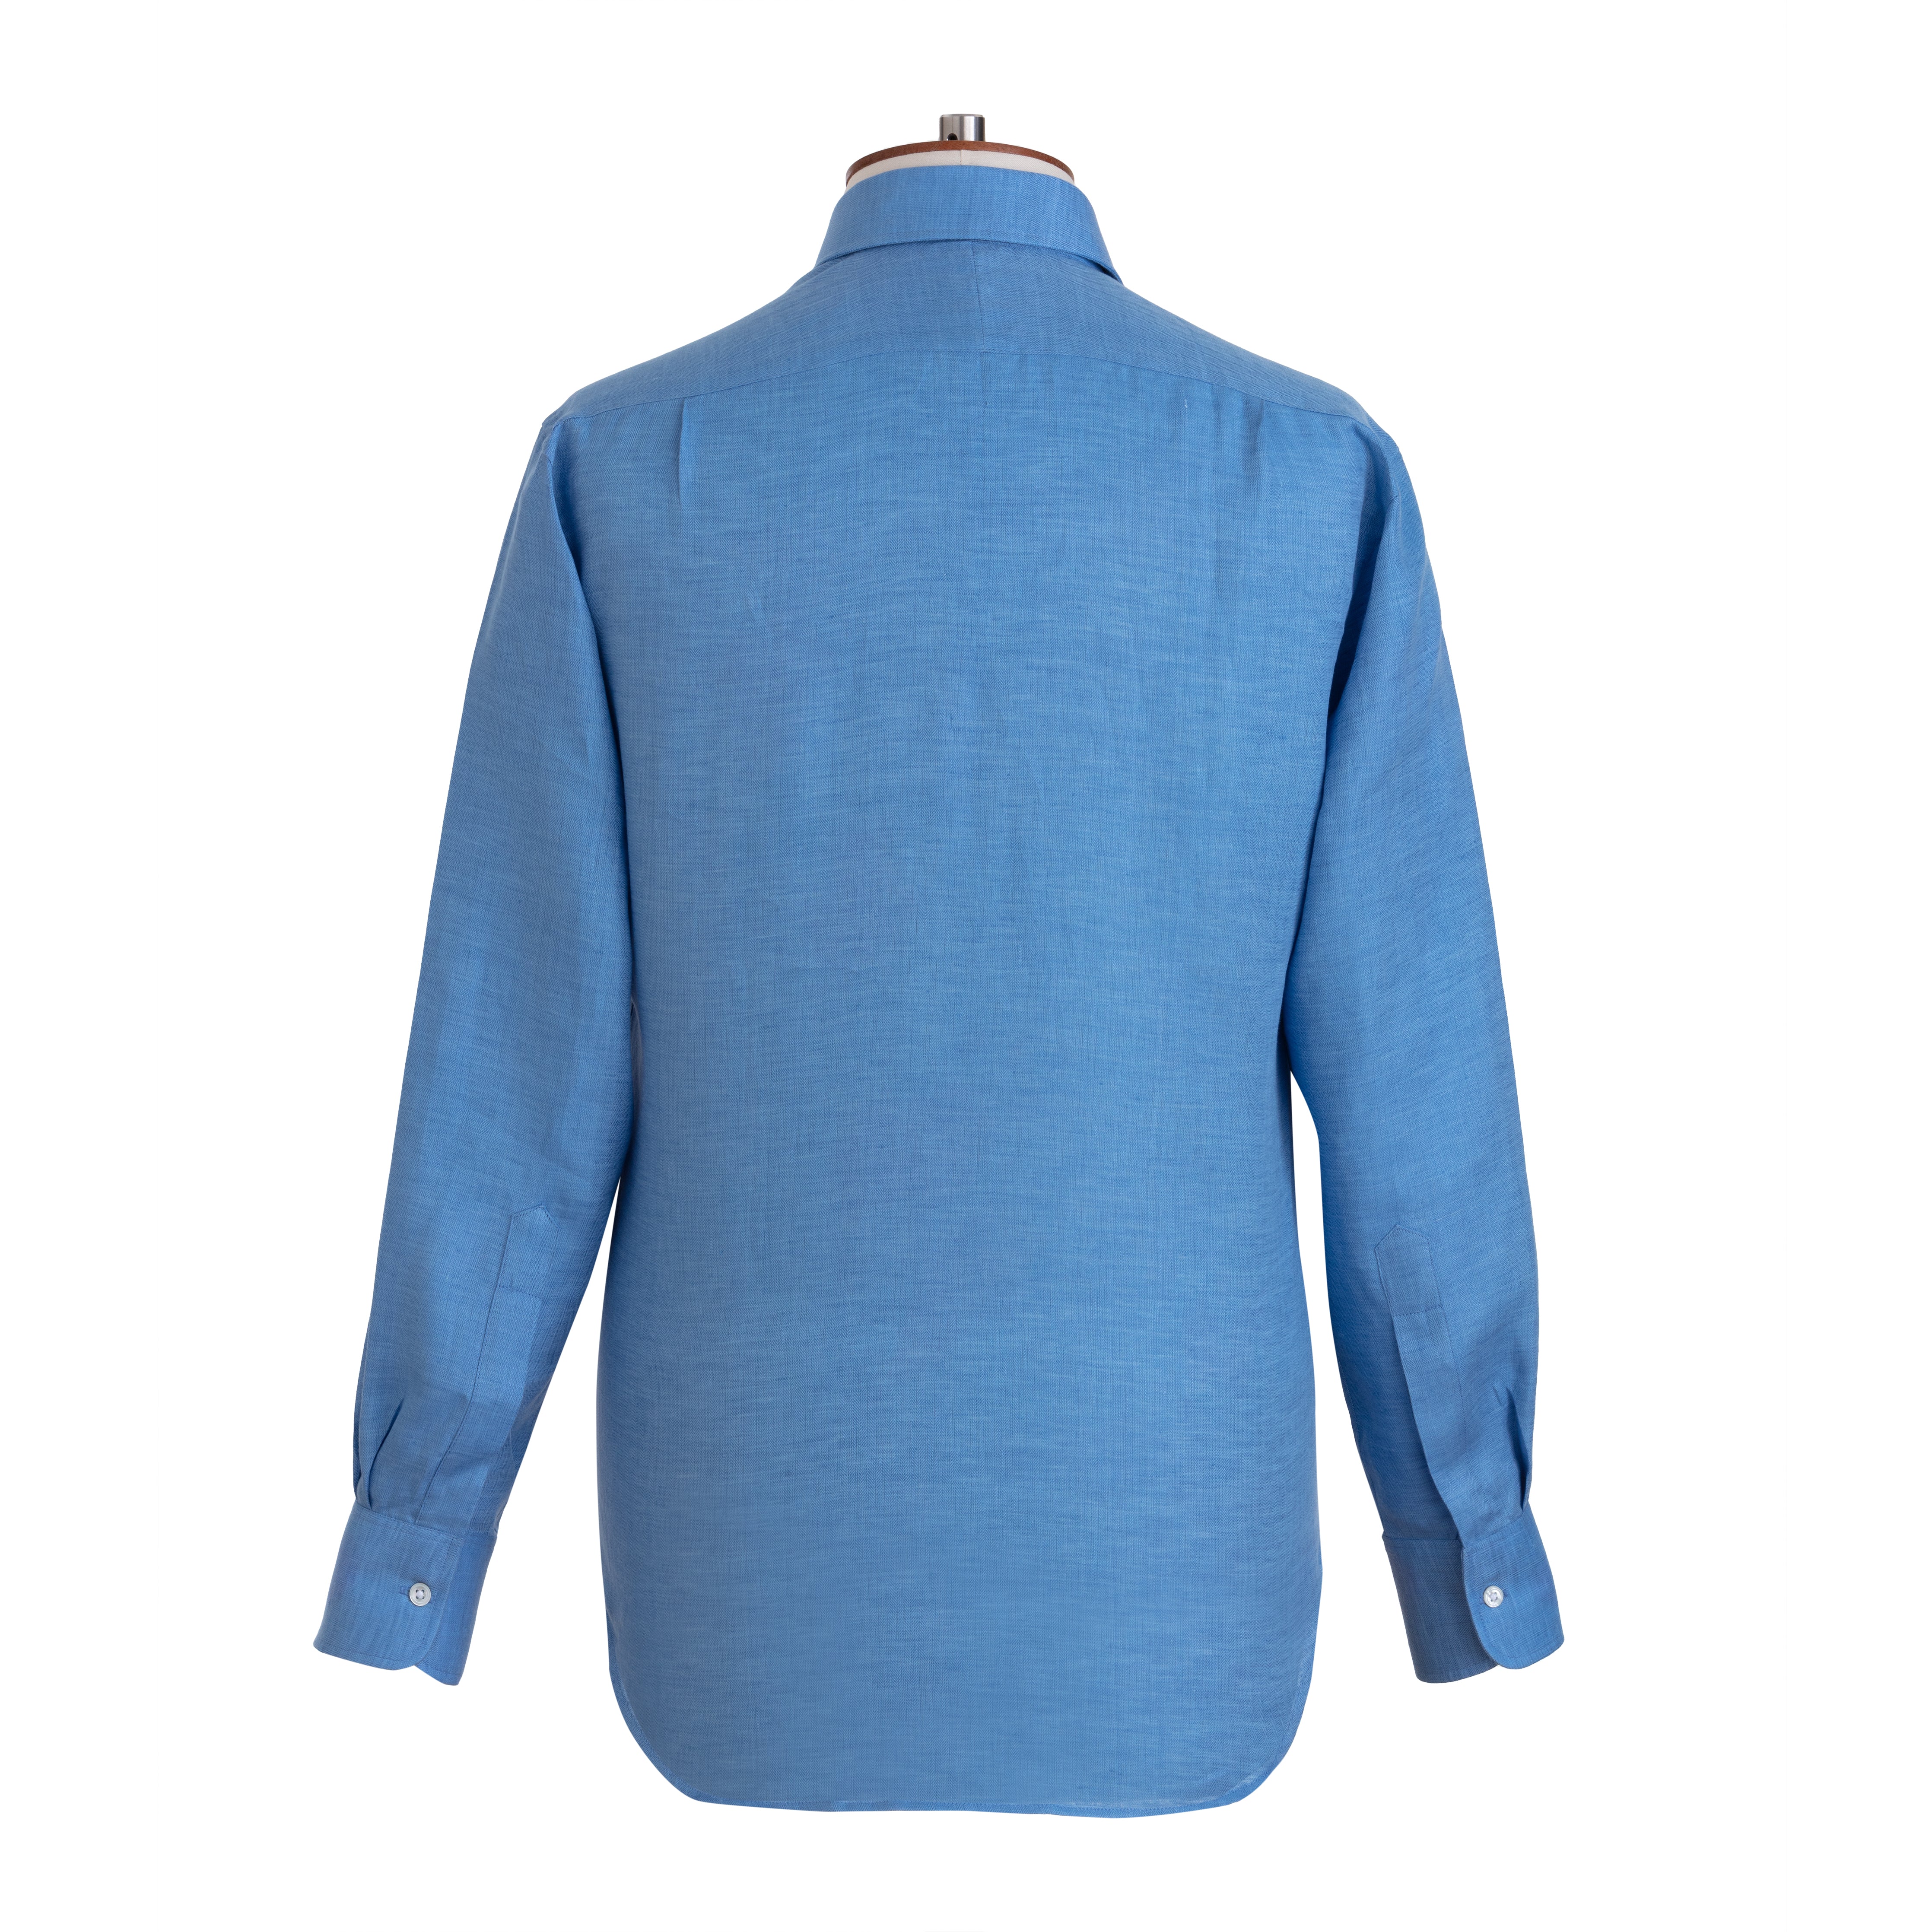 Bluebell Herringbone Linen Shirt - Emma Willis